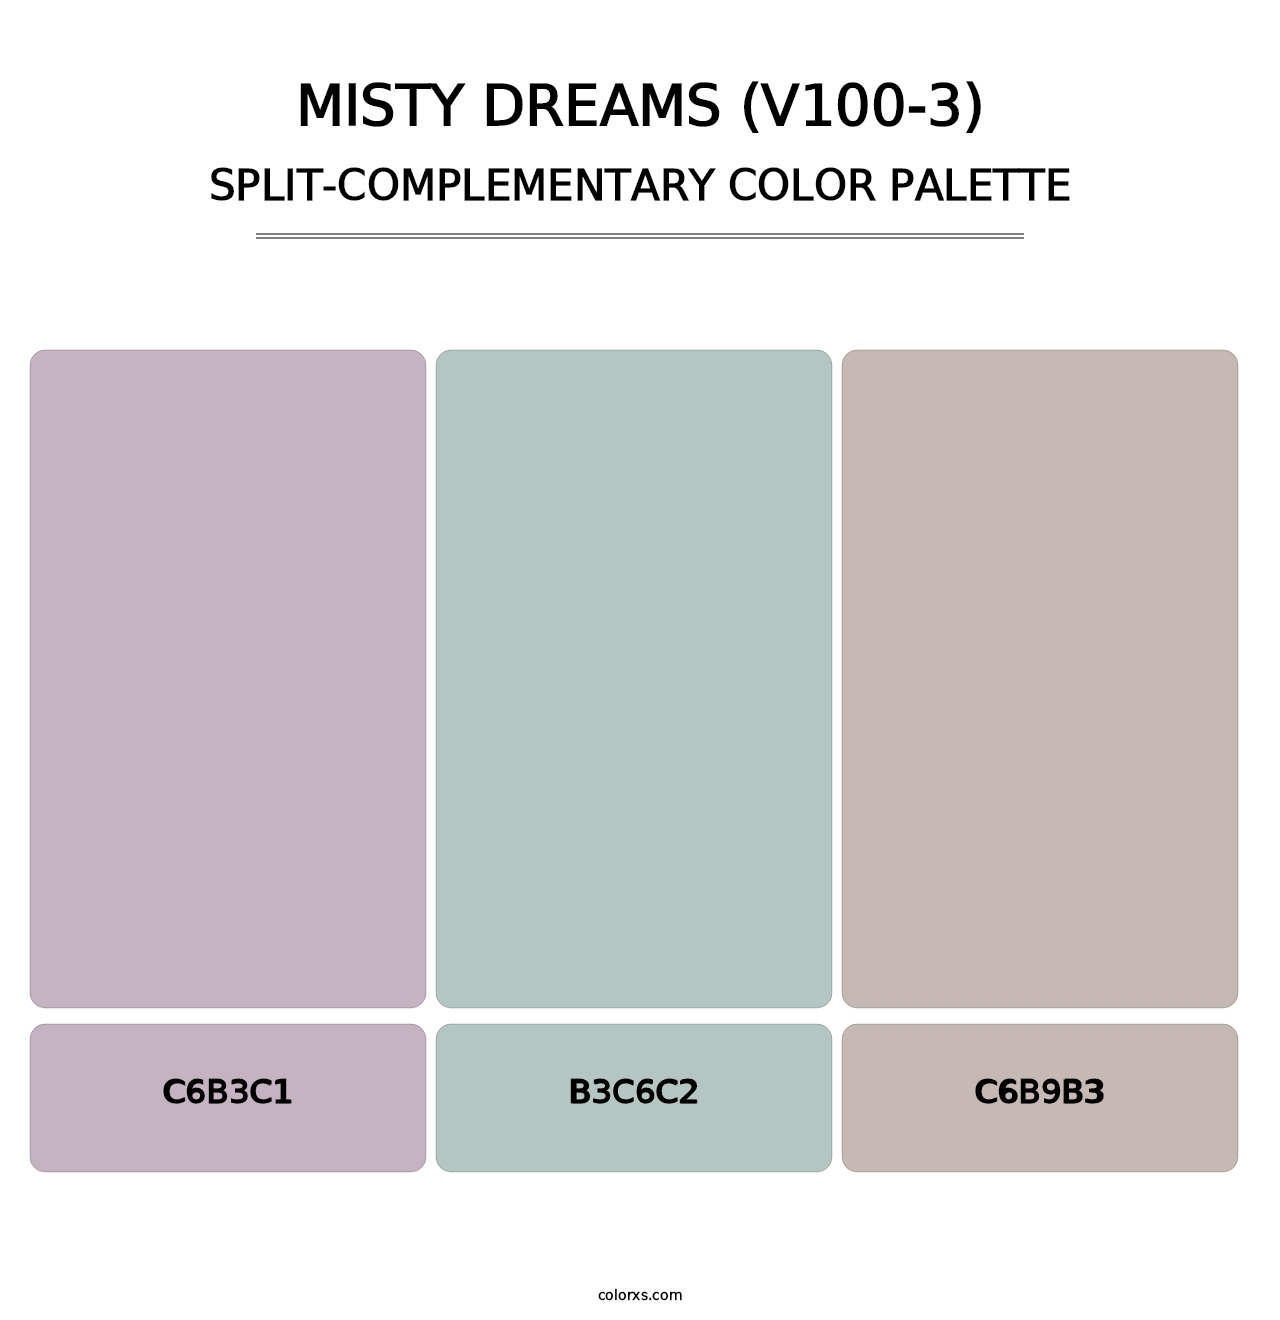 Misty Dreams (V100-3) - Split-Complementary Color Palette